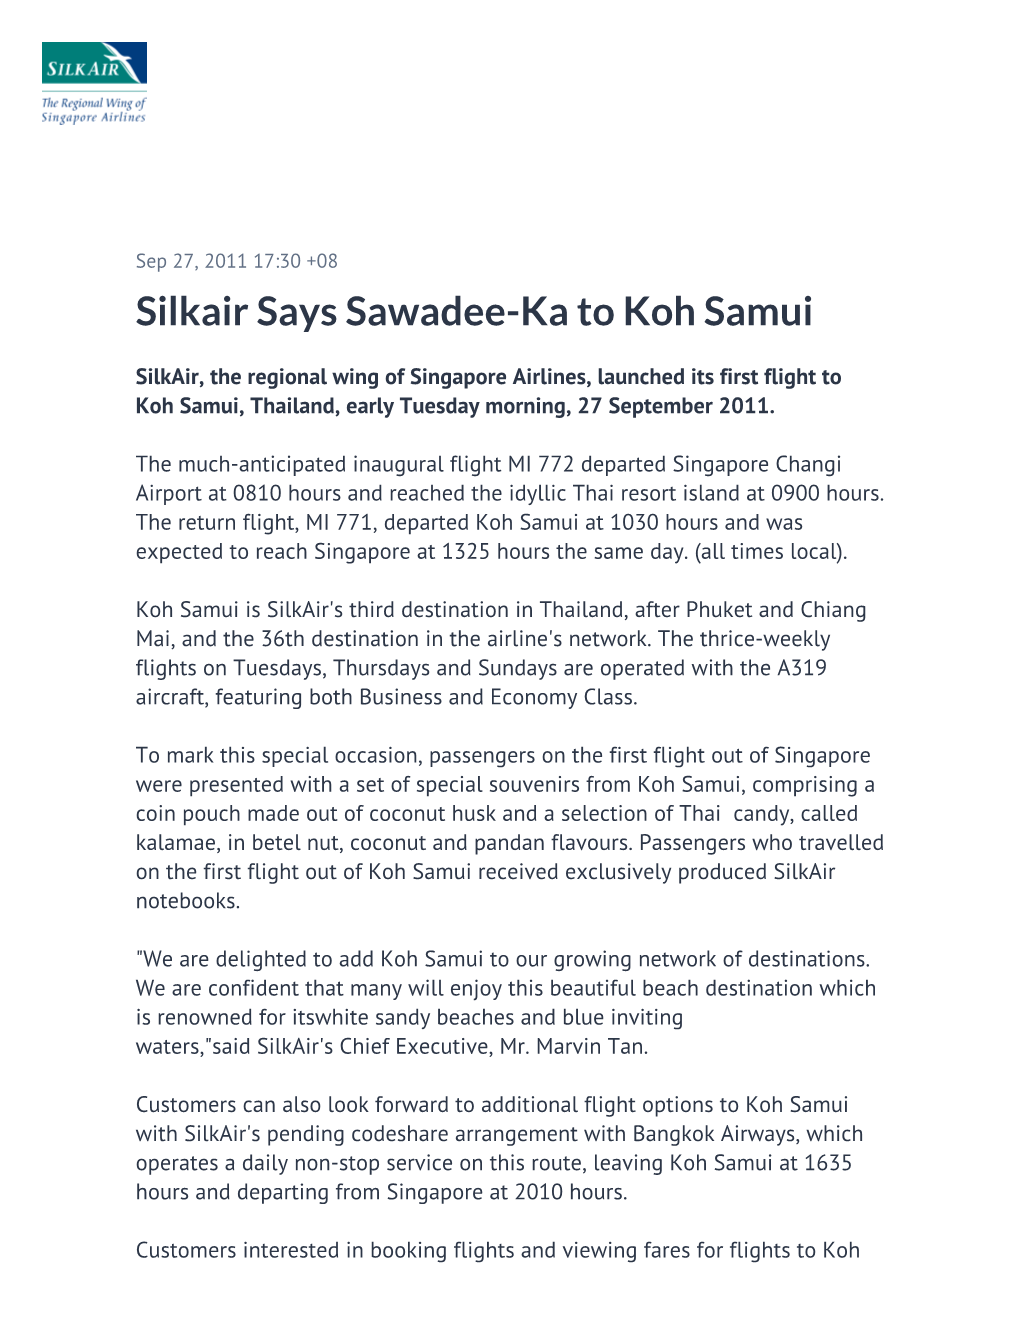 Silkair Says Sawadee-Ka to Koh Samui